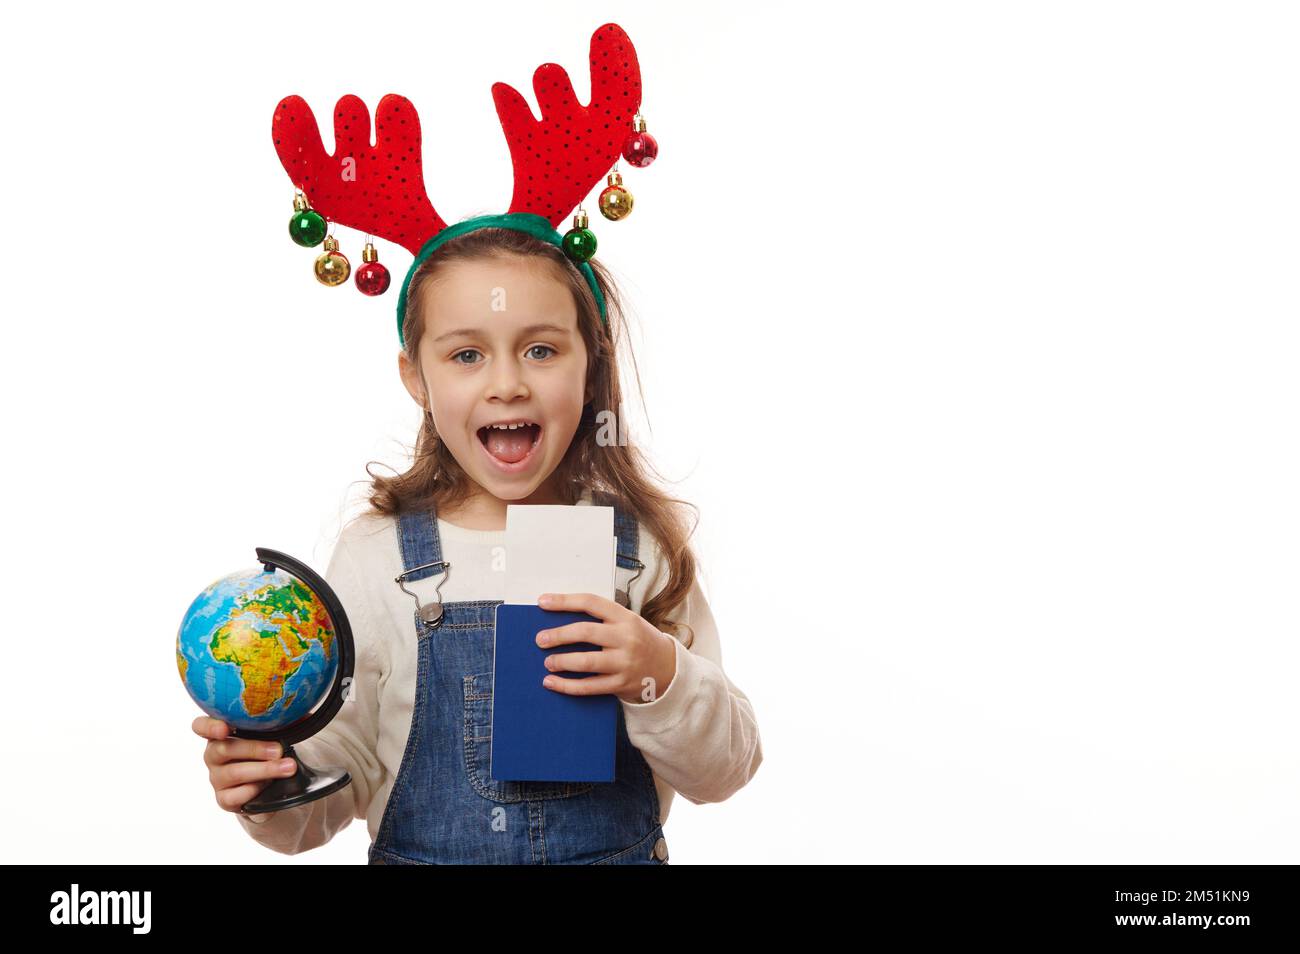 Ein bezauberndes kleines Mädchen mit Hirschgeweih, einem Globus und einer Bordkarte auf weißem Hintergrund. Reisekonzept Stockfoto